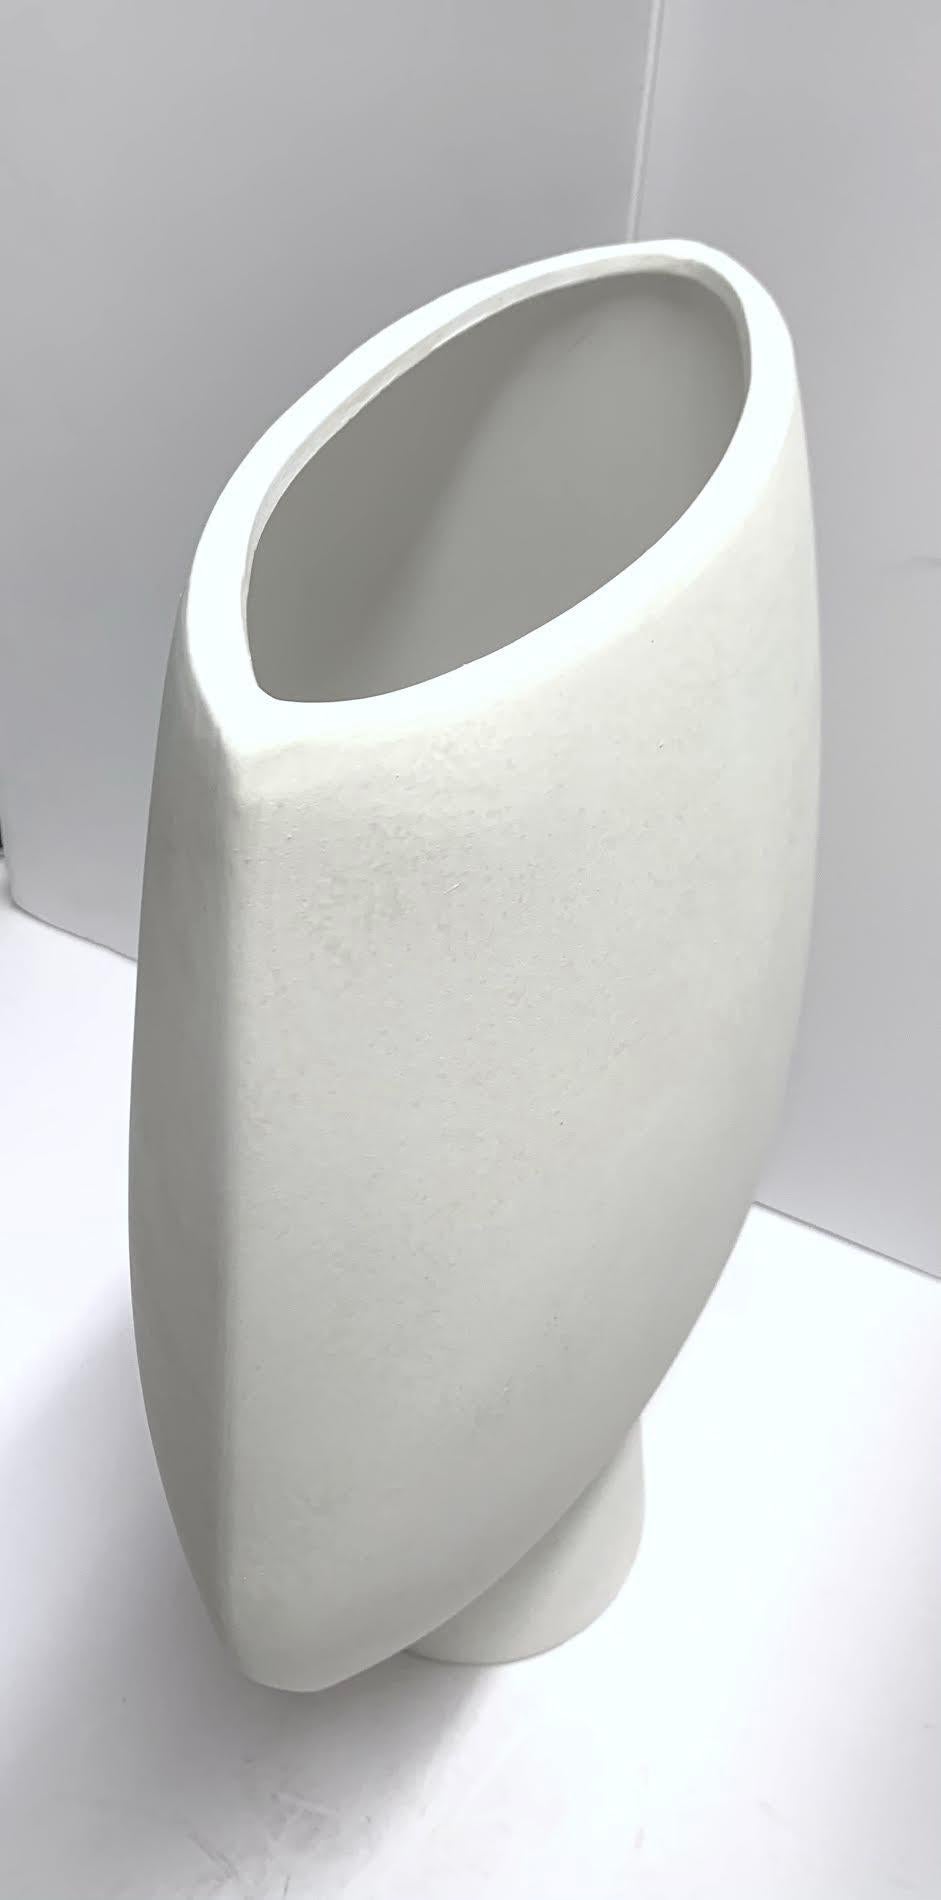 Große pfeilförmige Vase in dänischem Design.
Die Farbe ist weiß.
Teil einer großen Sammlung von Vasen mit dänischem Design.